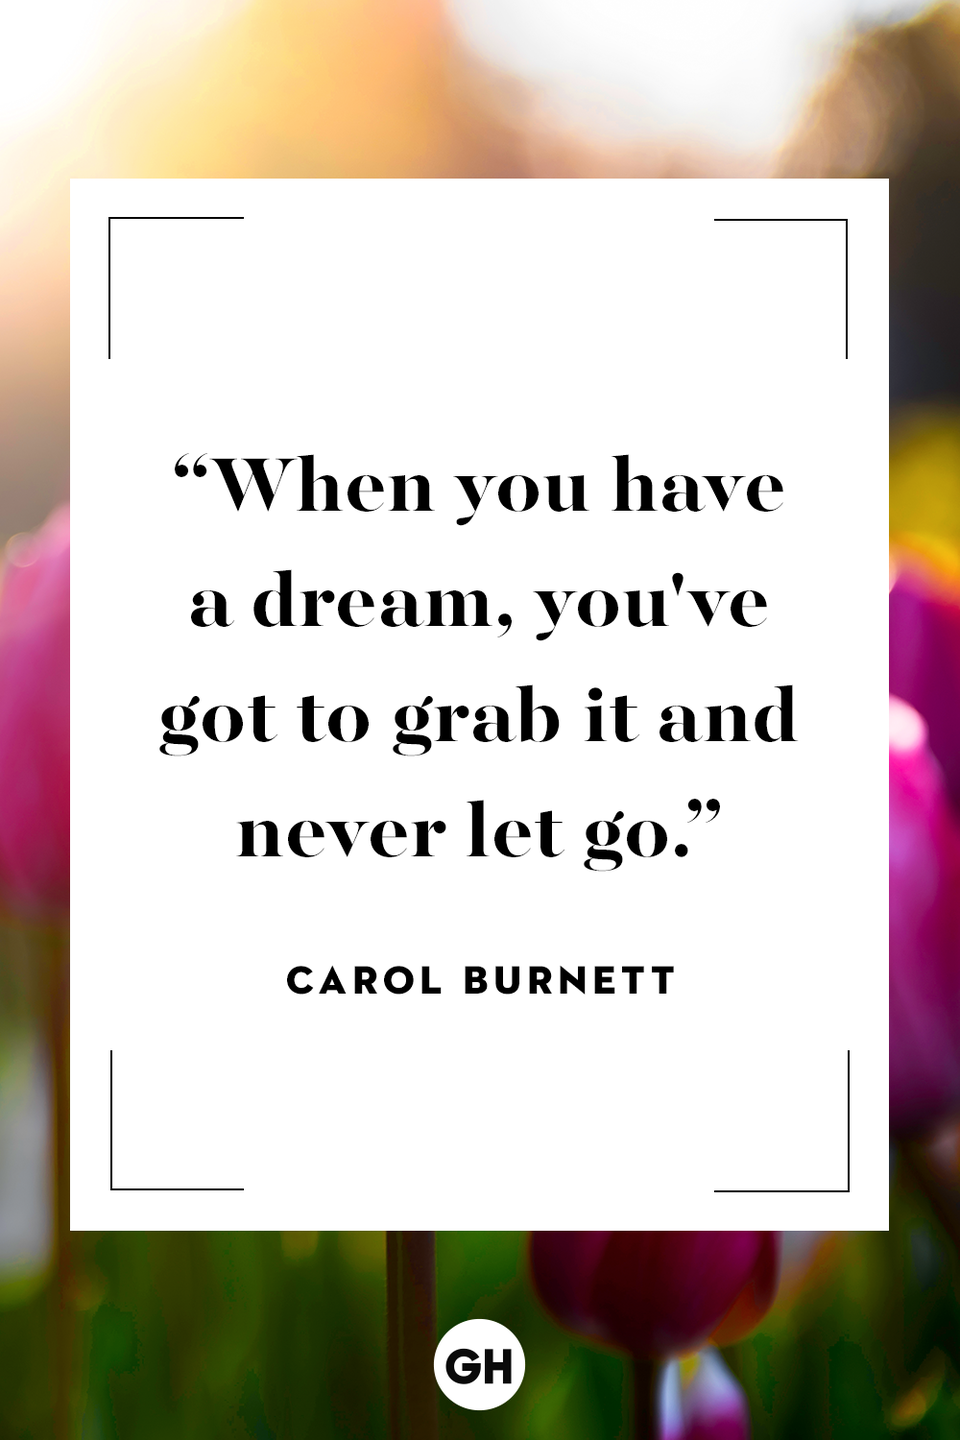 51) Carol Burnett